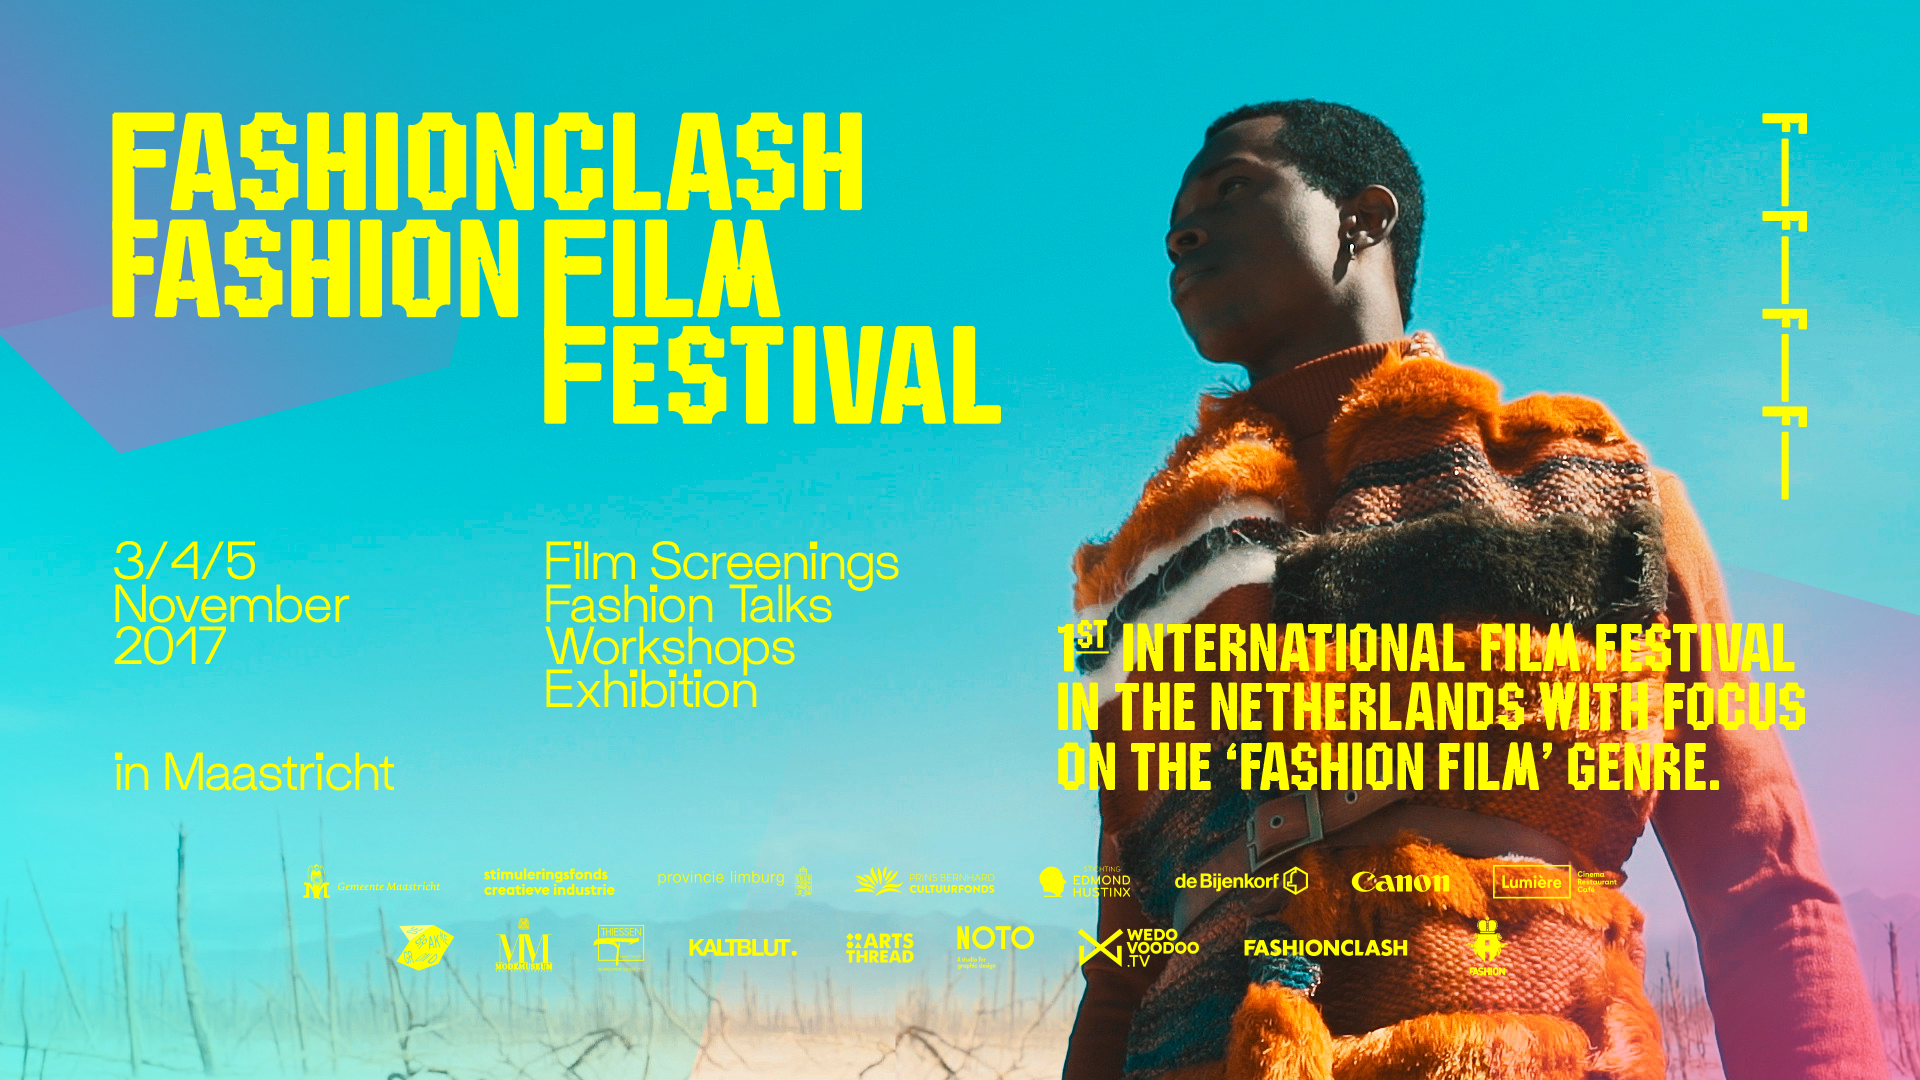 Fashionclash Fashion Film Festival